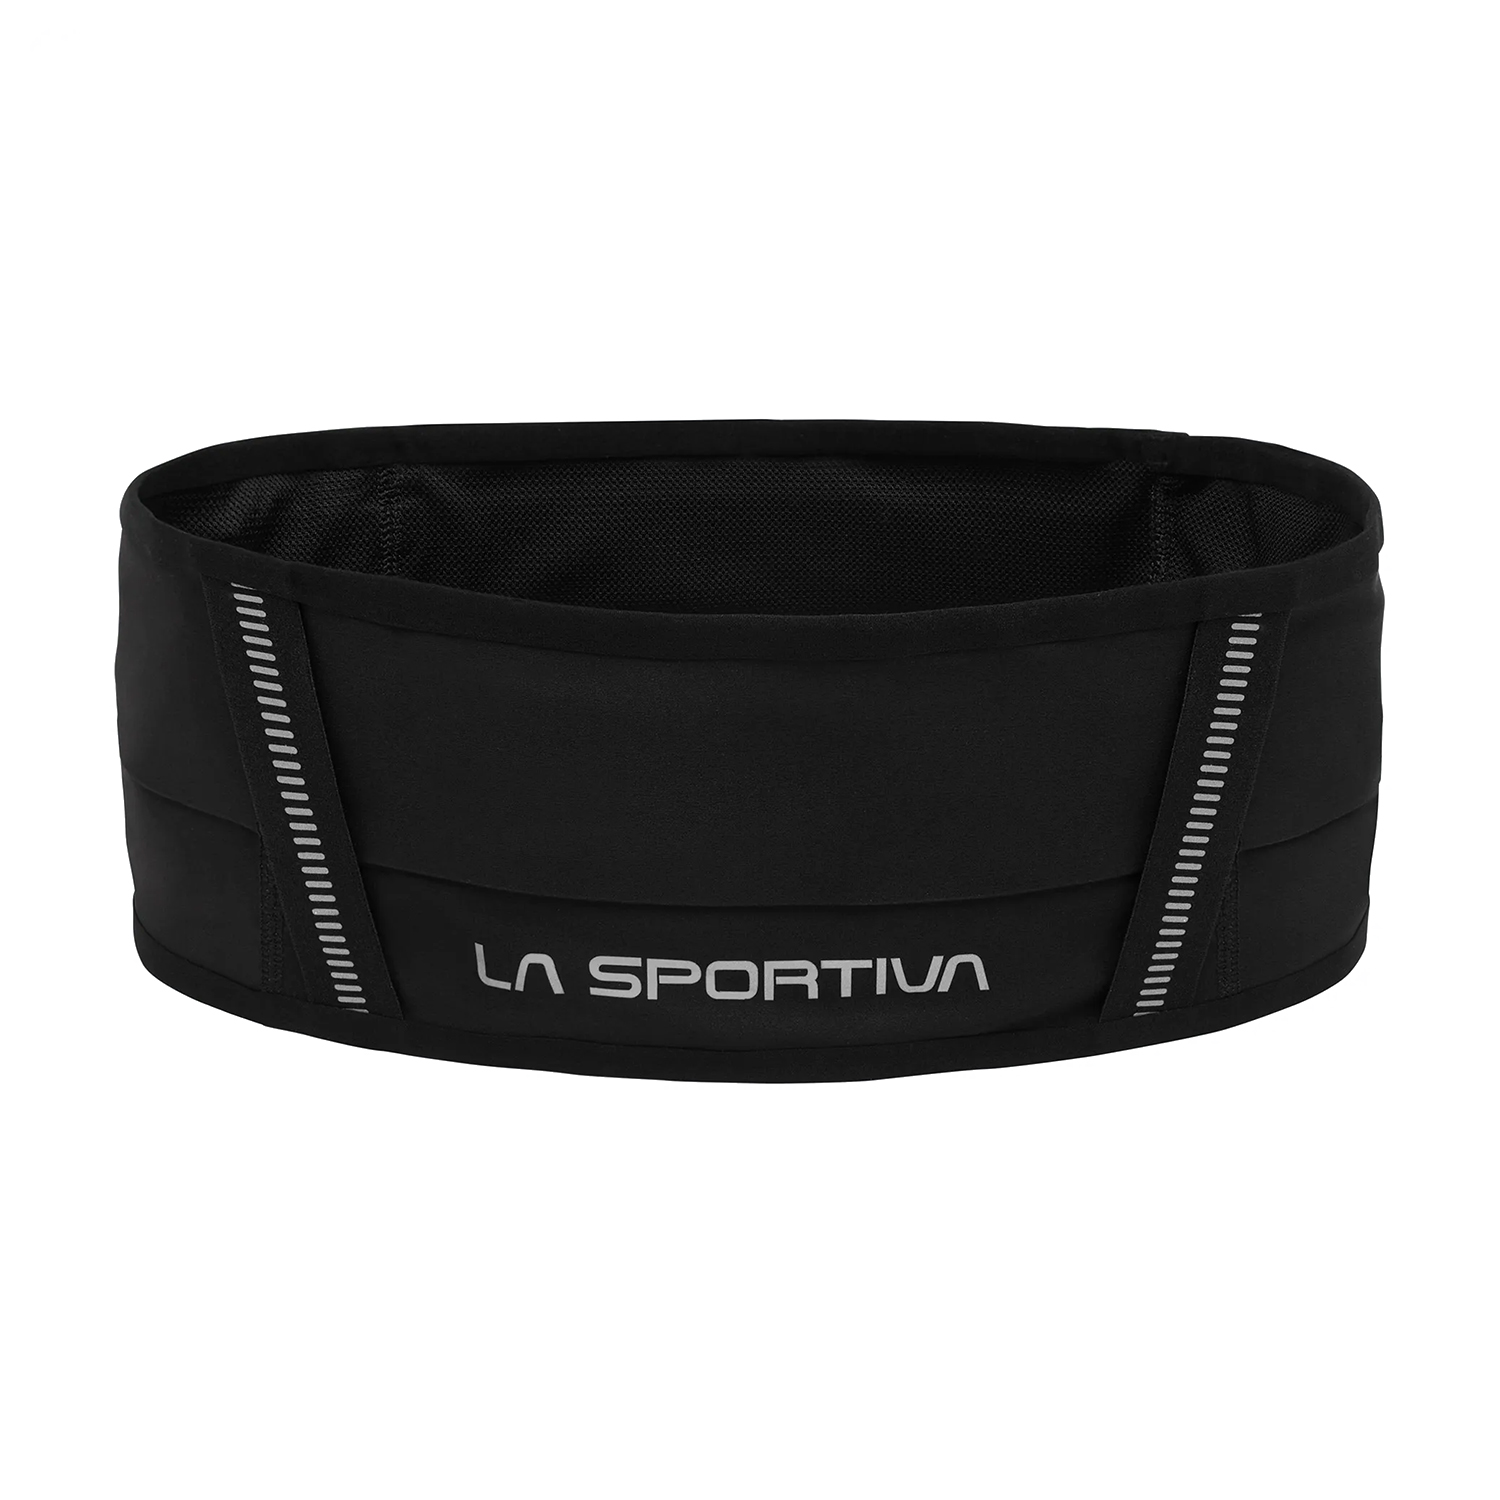 La Sportiva Run Belt - Black